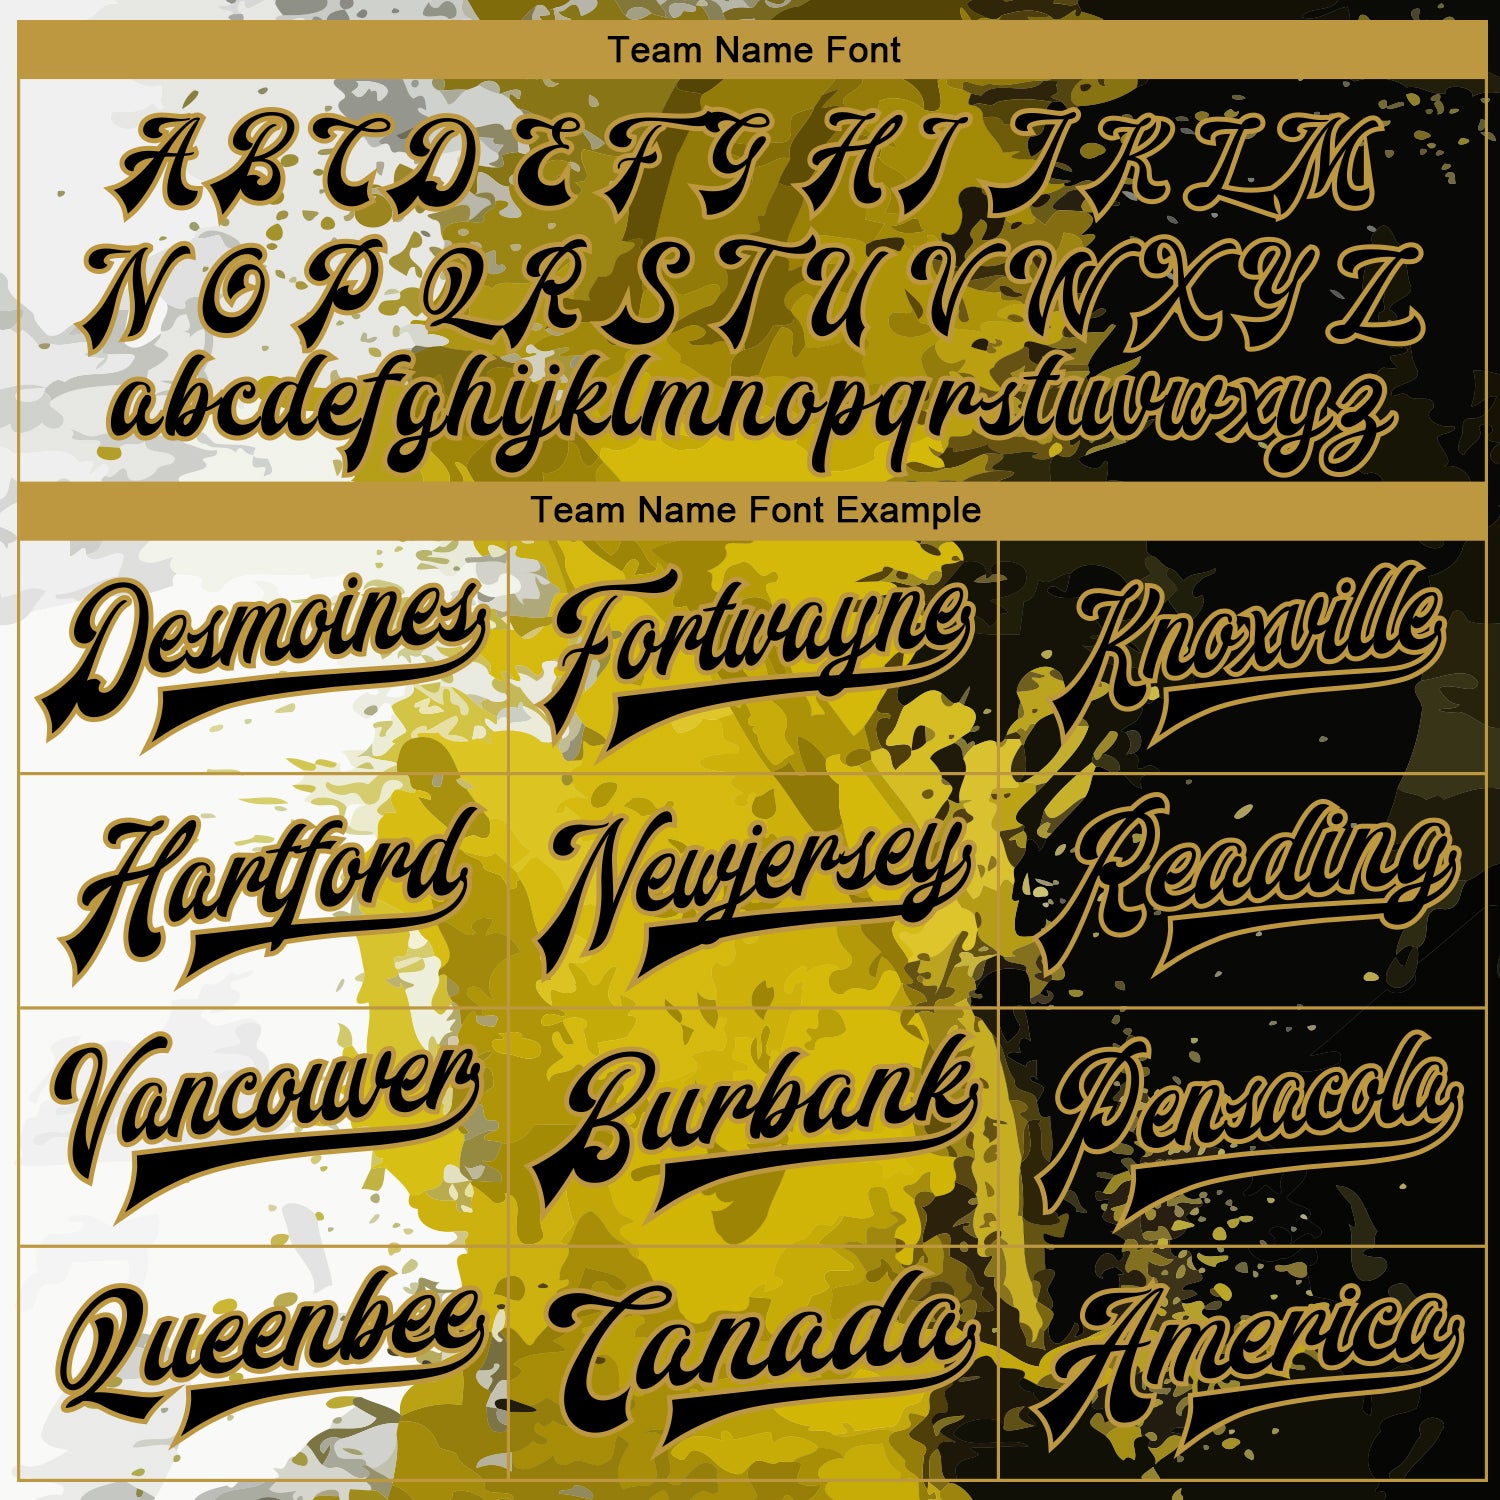 Custom Graffiti Pattern Black-Old Gold Grunge Art 3D Bomber Full-Snap Varsity Letterman Jacket